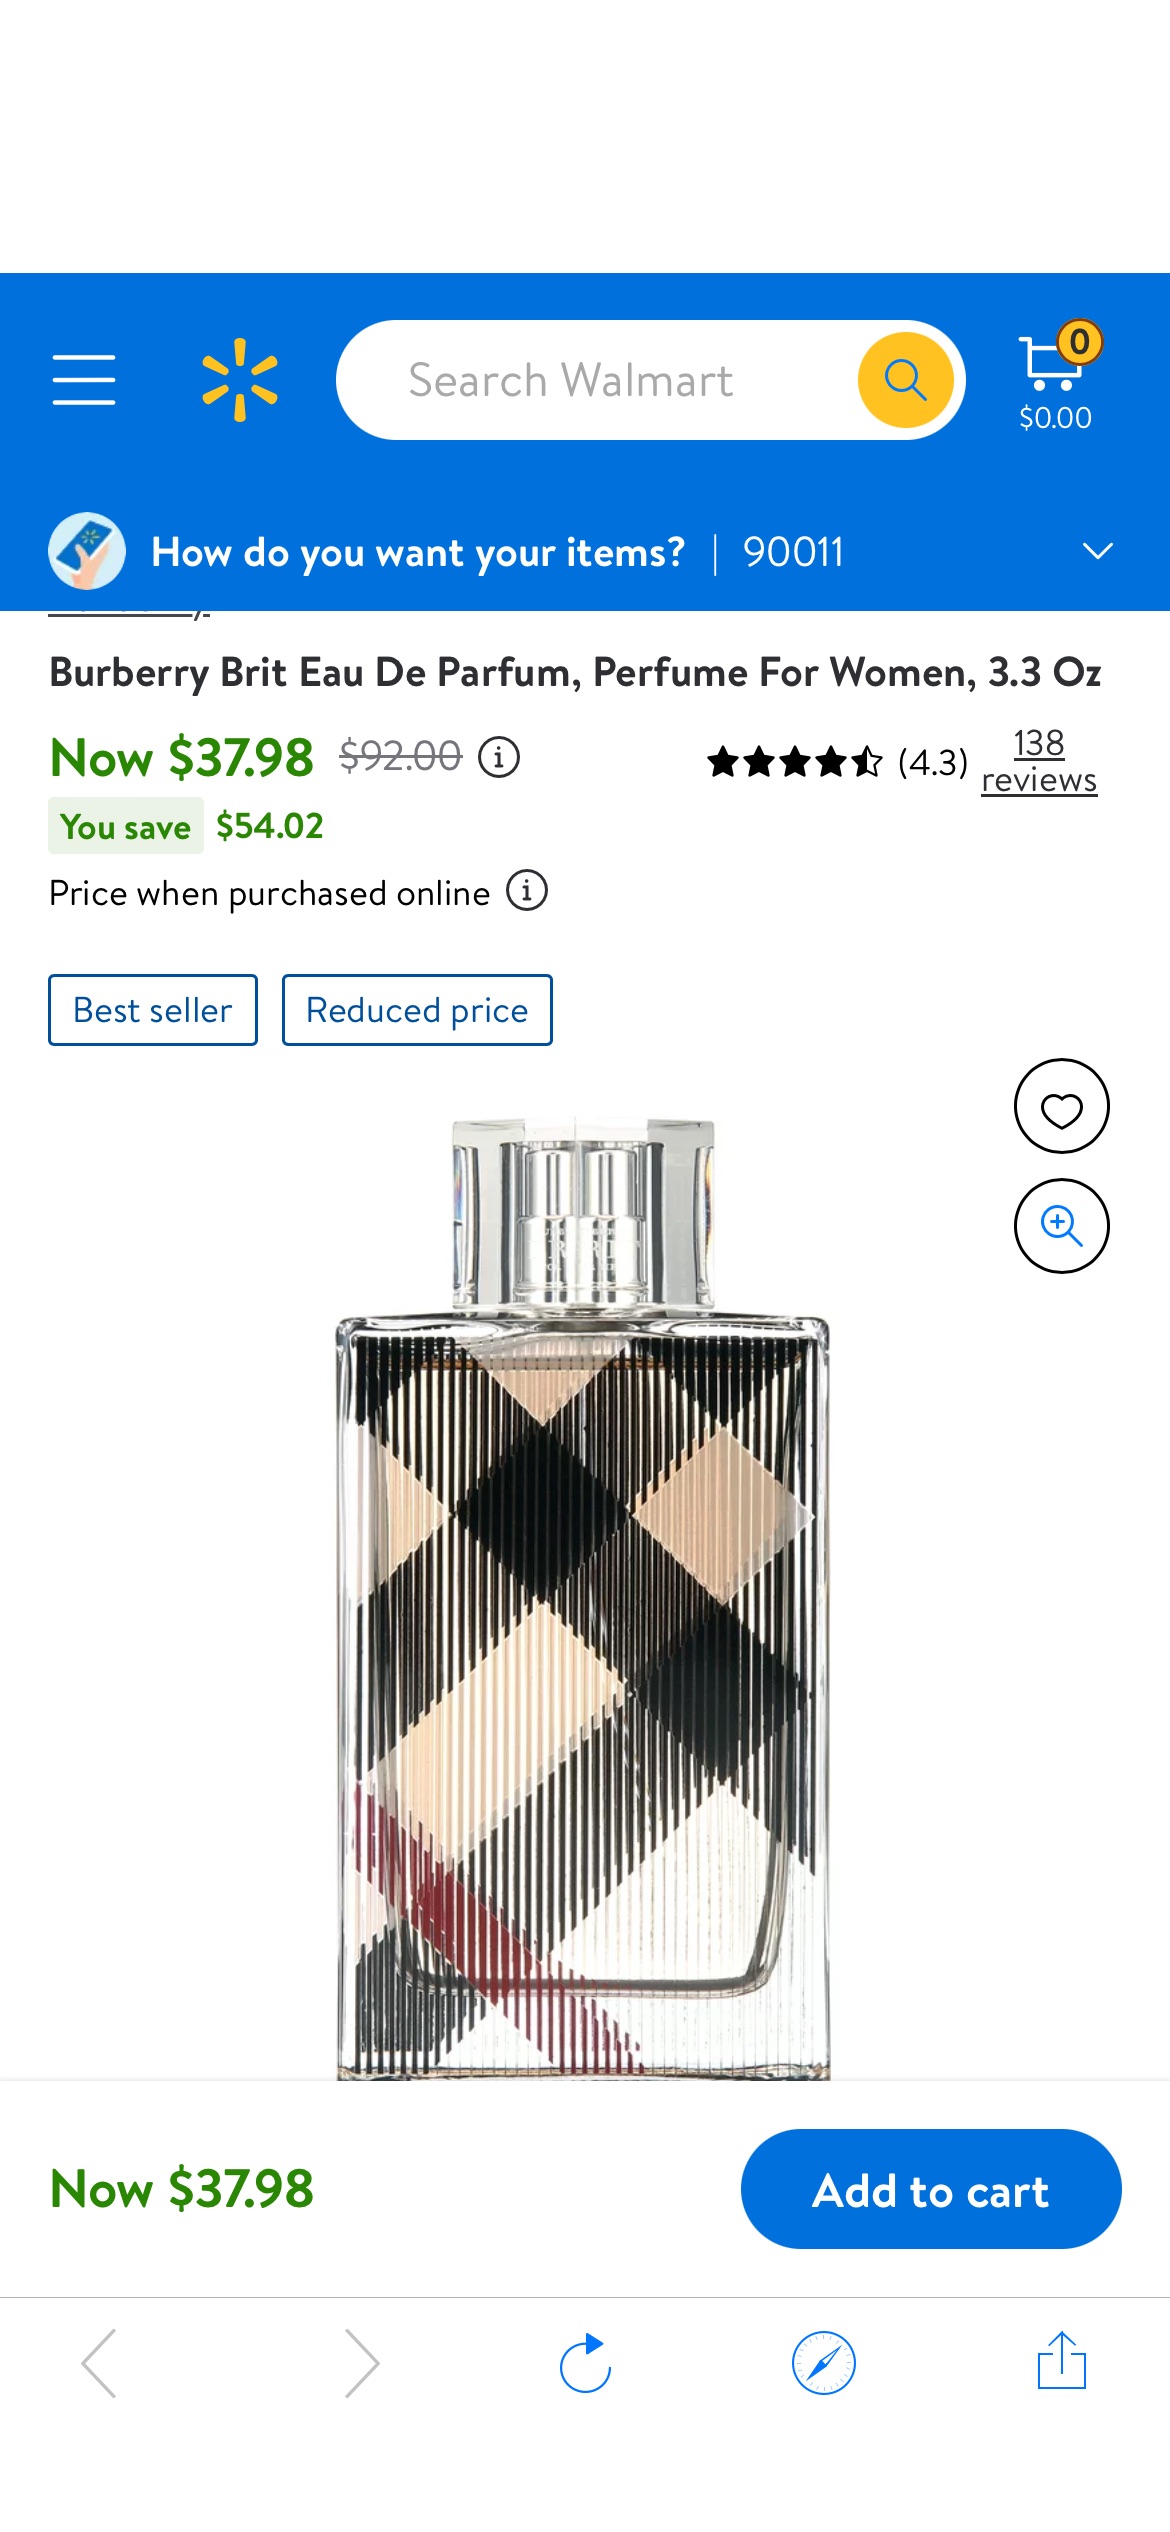 Burberry Brit Eau De Parfum, Perfume For Women, 3.3 Oz - Walmart.com